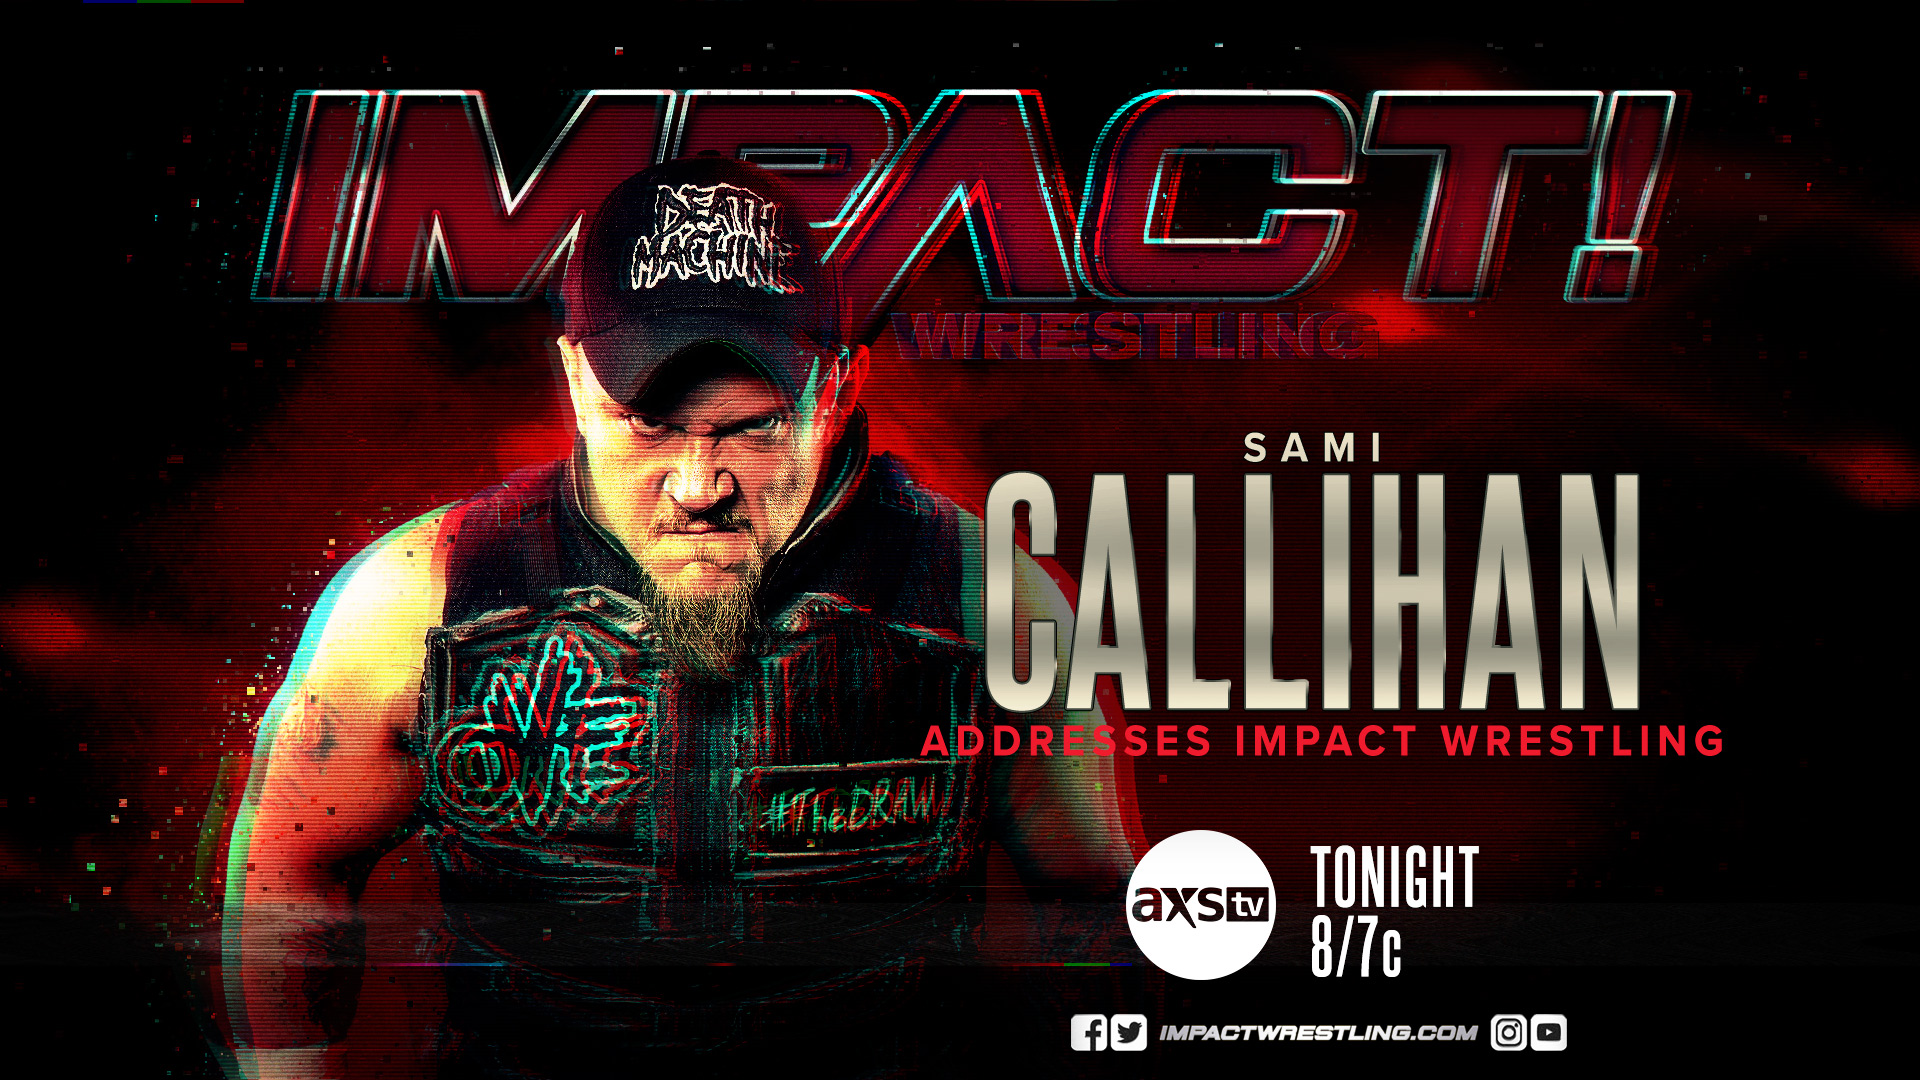 Impact Wrestling Sami Callihan